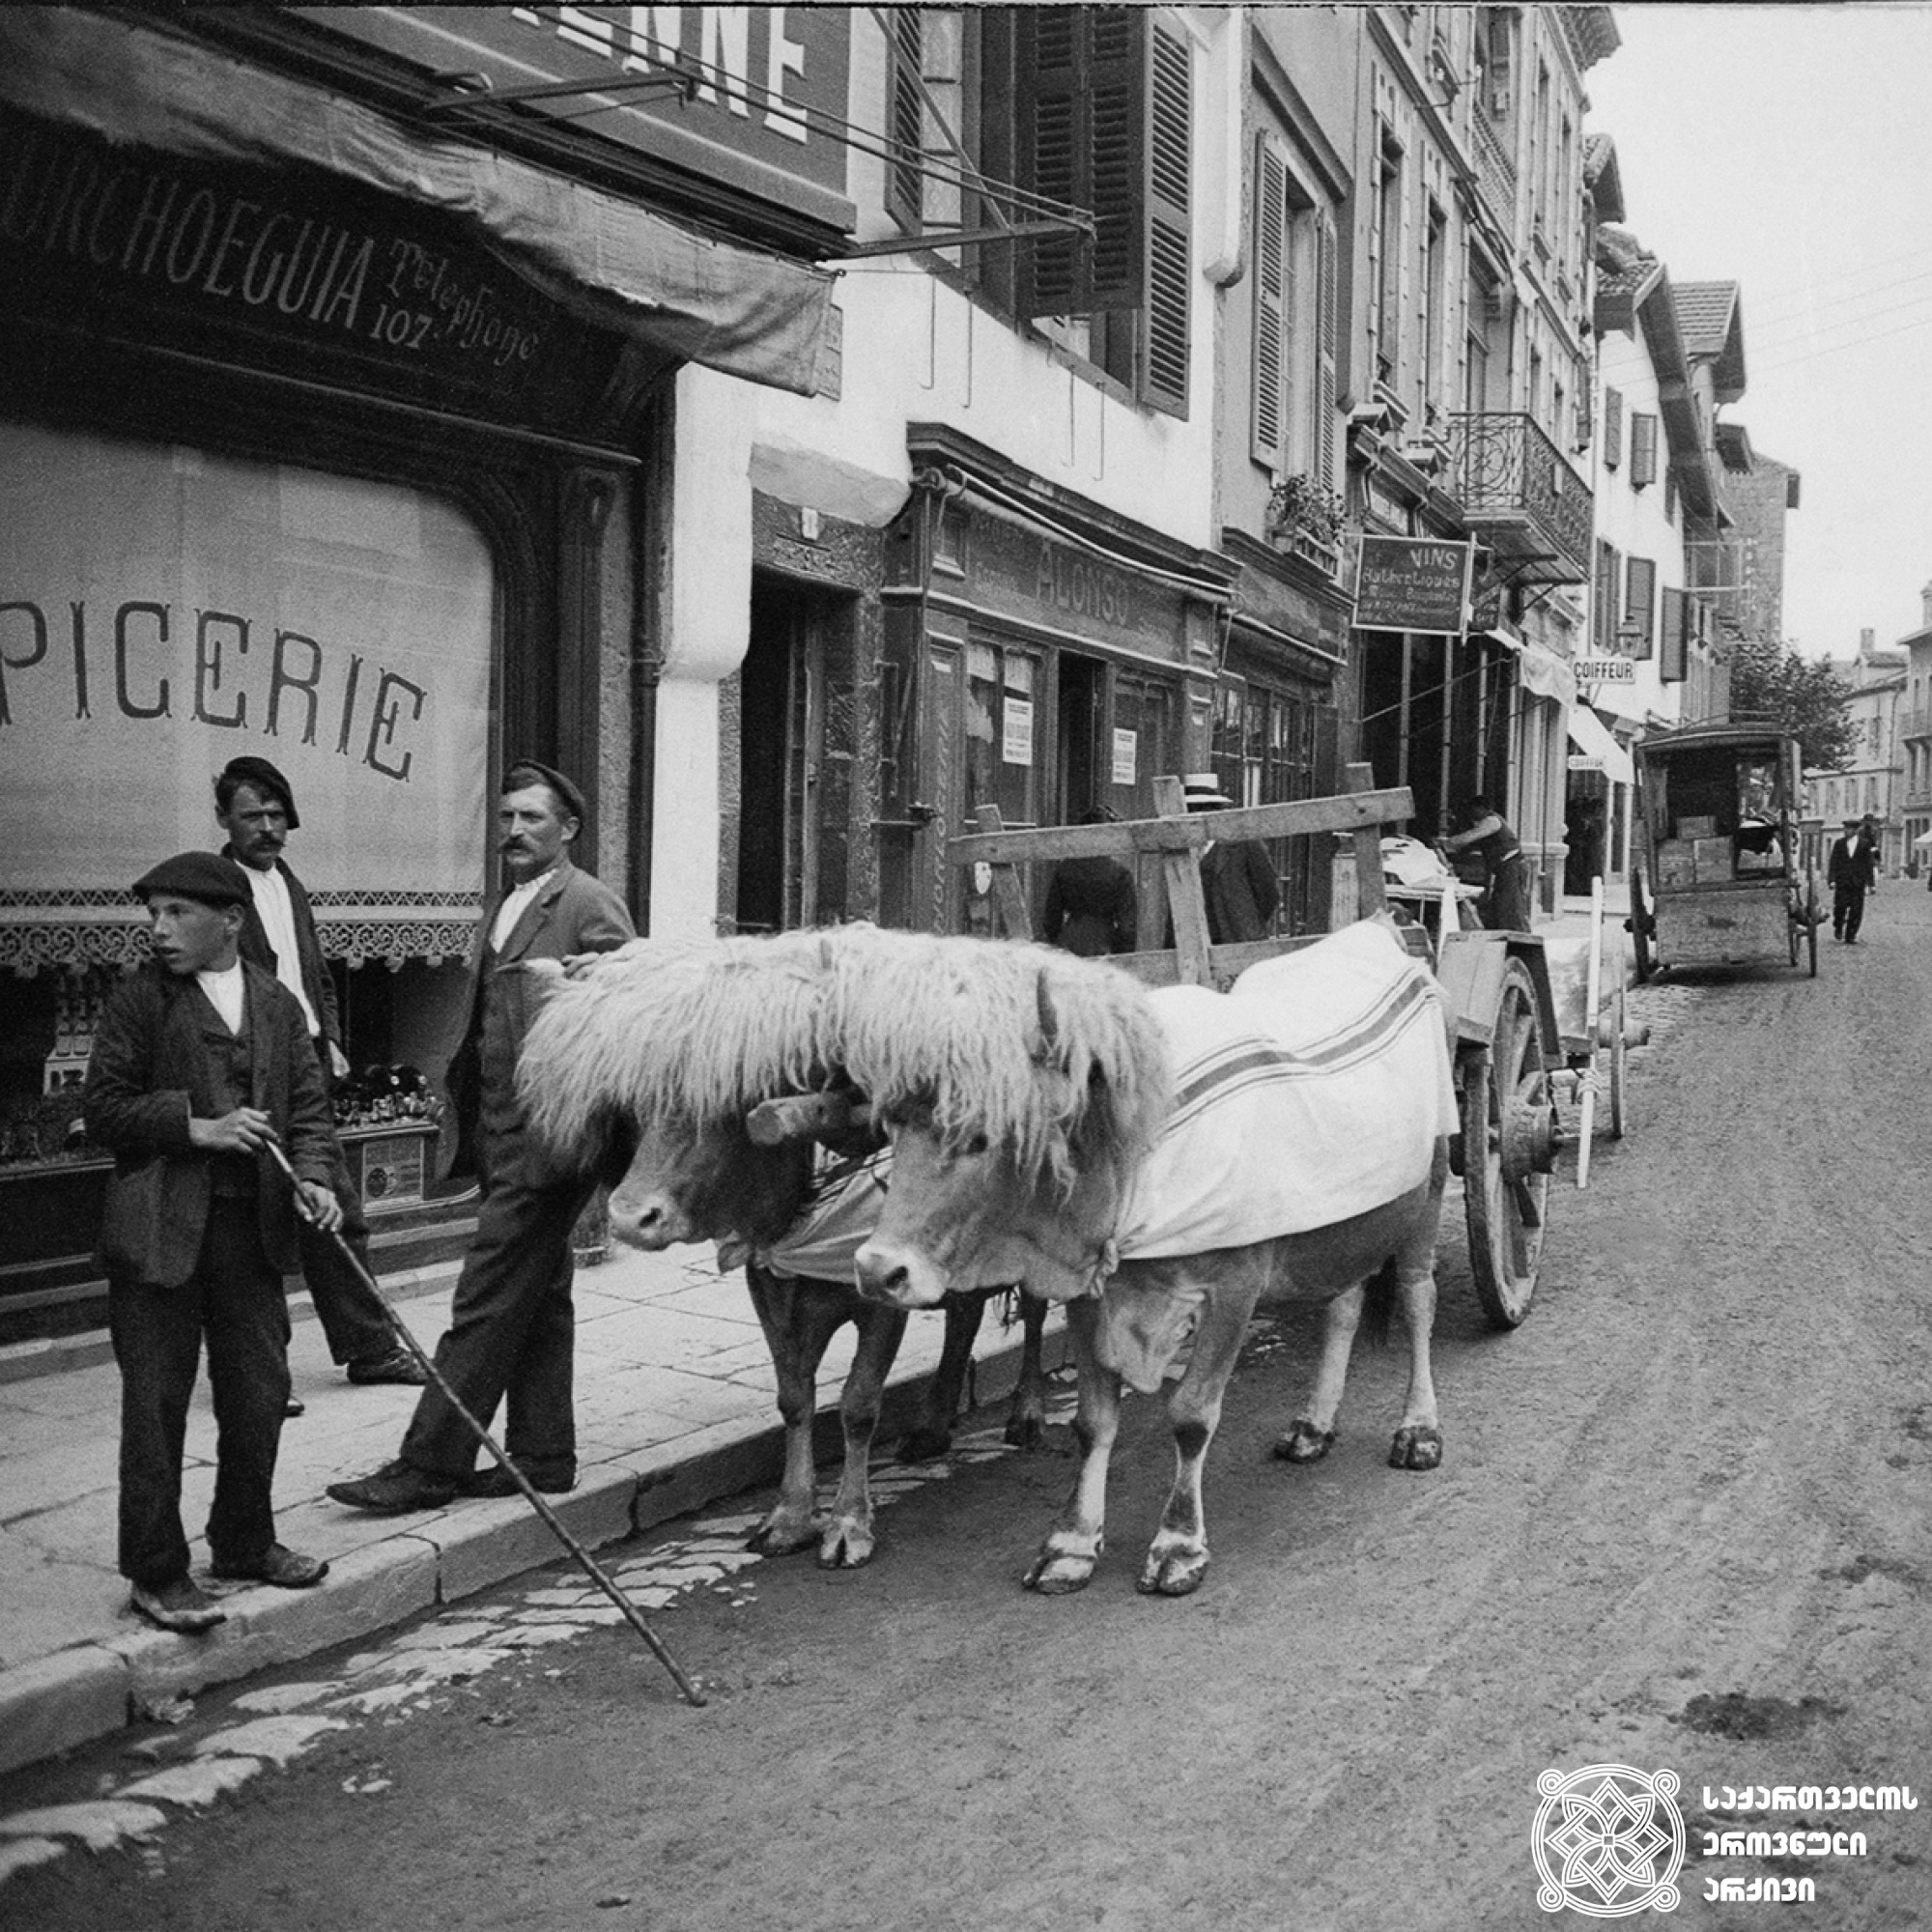 ურემში შებმული ხარები ბიარიცის ქუჩაში, საფრანგეთი <br>
1912 წელი <br>
გიგლო ყარალაშვილის კოლექცია <br>

Bulls in a cart on Biarritz street, France  <br>
1912 <br>
Giglo Karalashvili collection